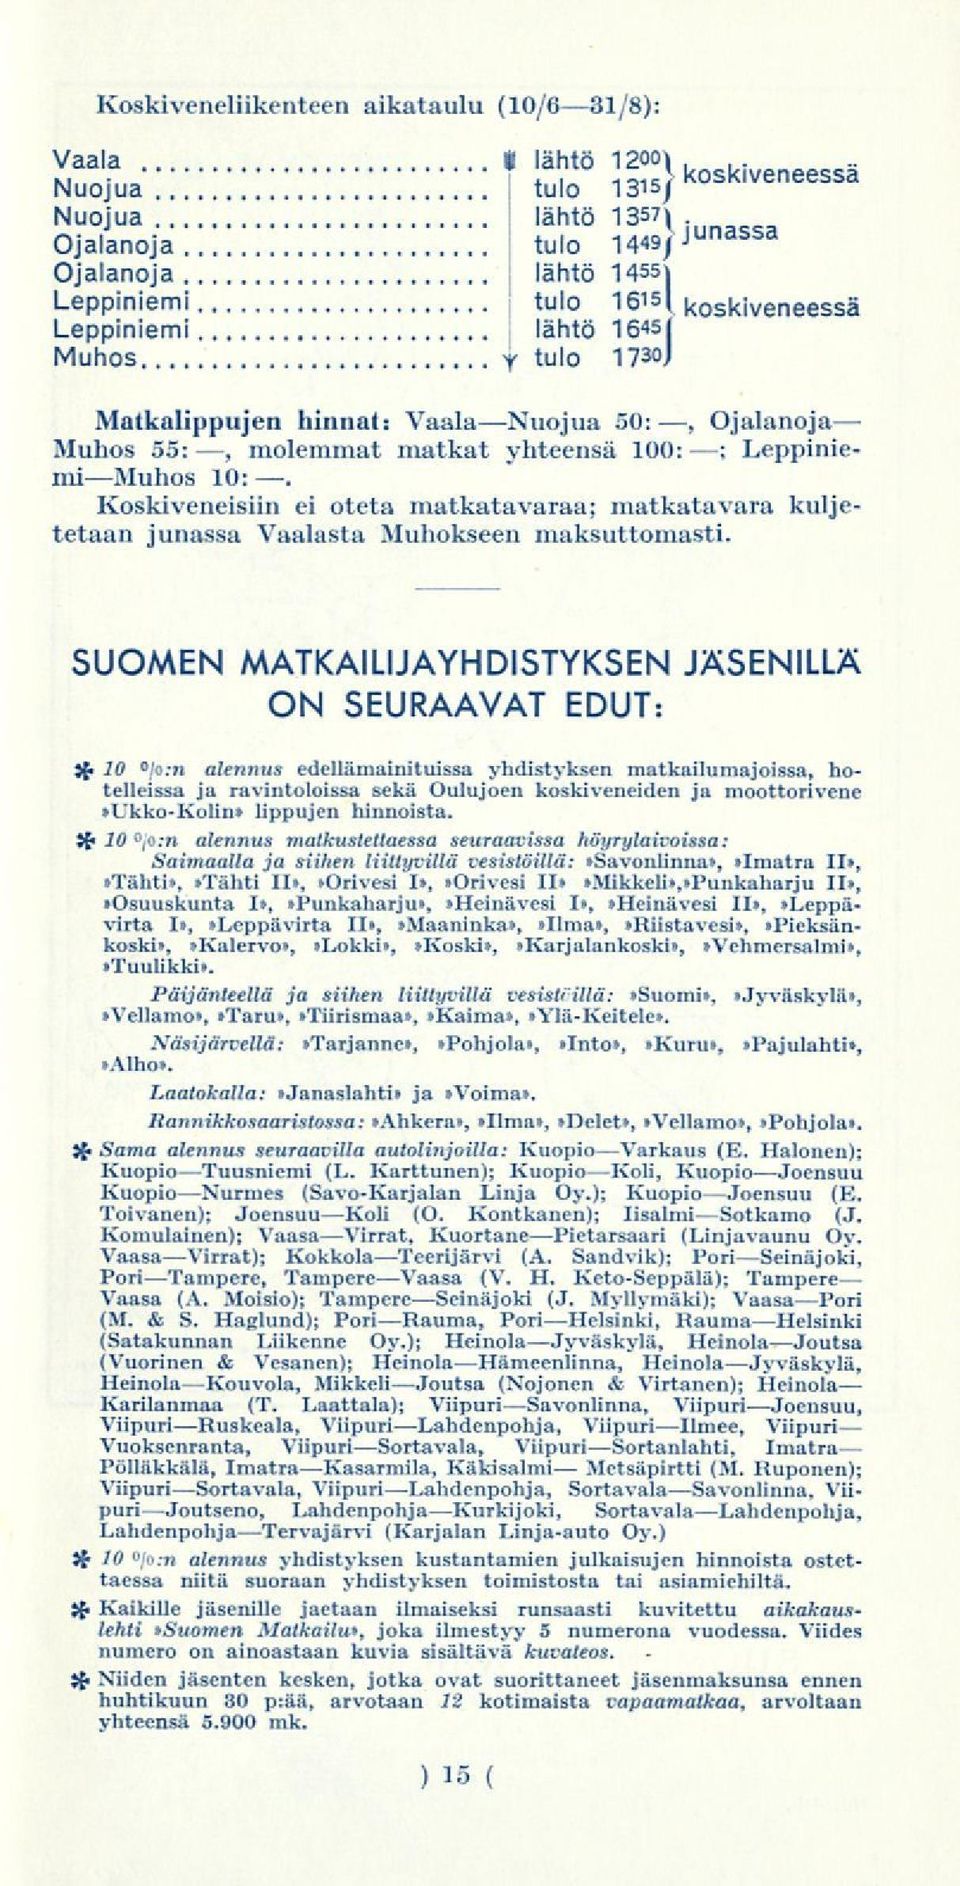 yhteensä 100: LeppiniemiMuhos 10:. ; Koskiveneisiin ei oteta matkatavaraa; matkatavara kuljetetaan junassa Vaalasta Muhokseen maksuttomasti.